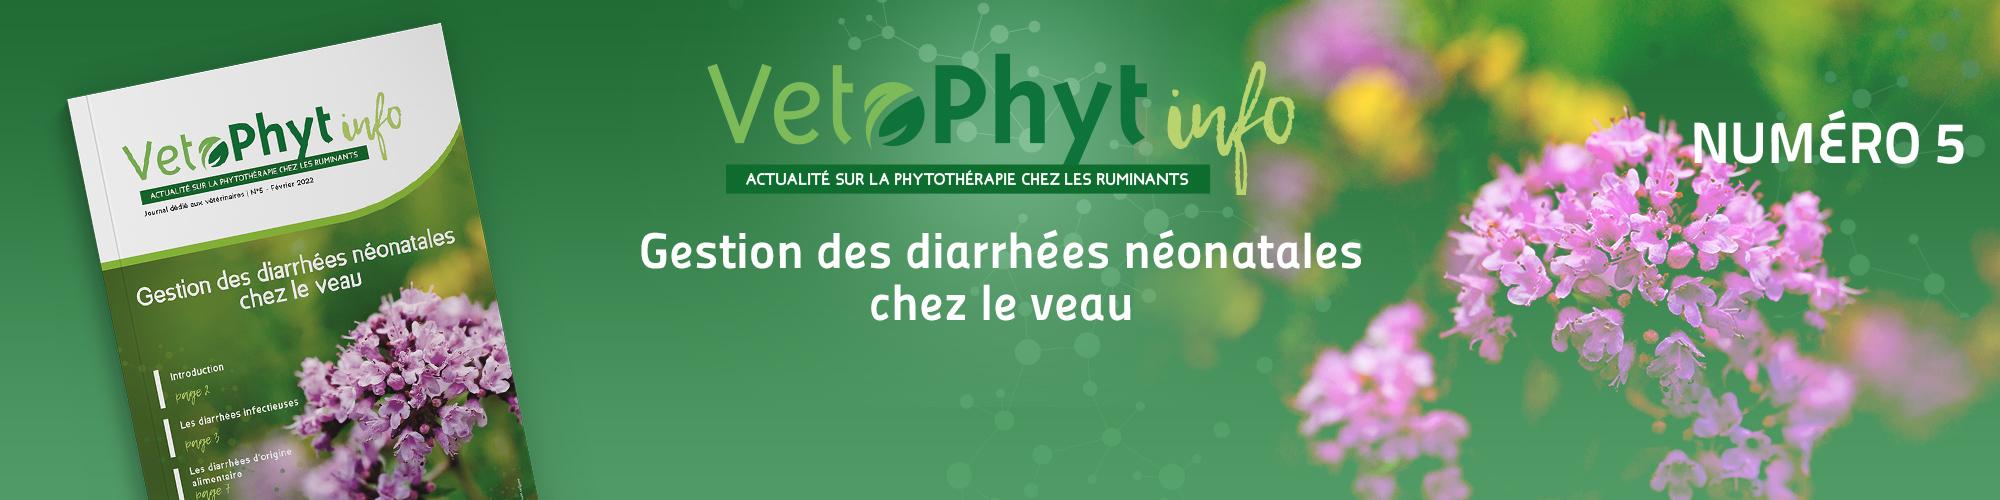 VetoPhyt Info 